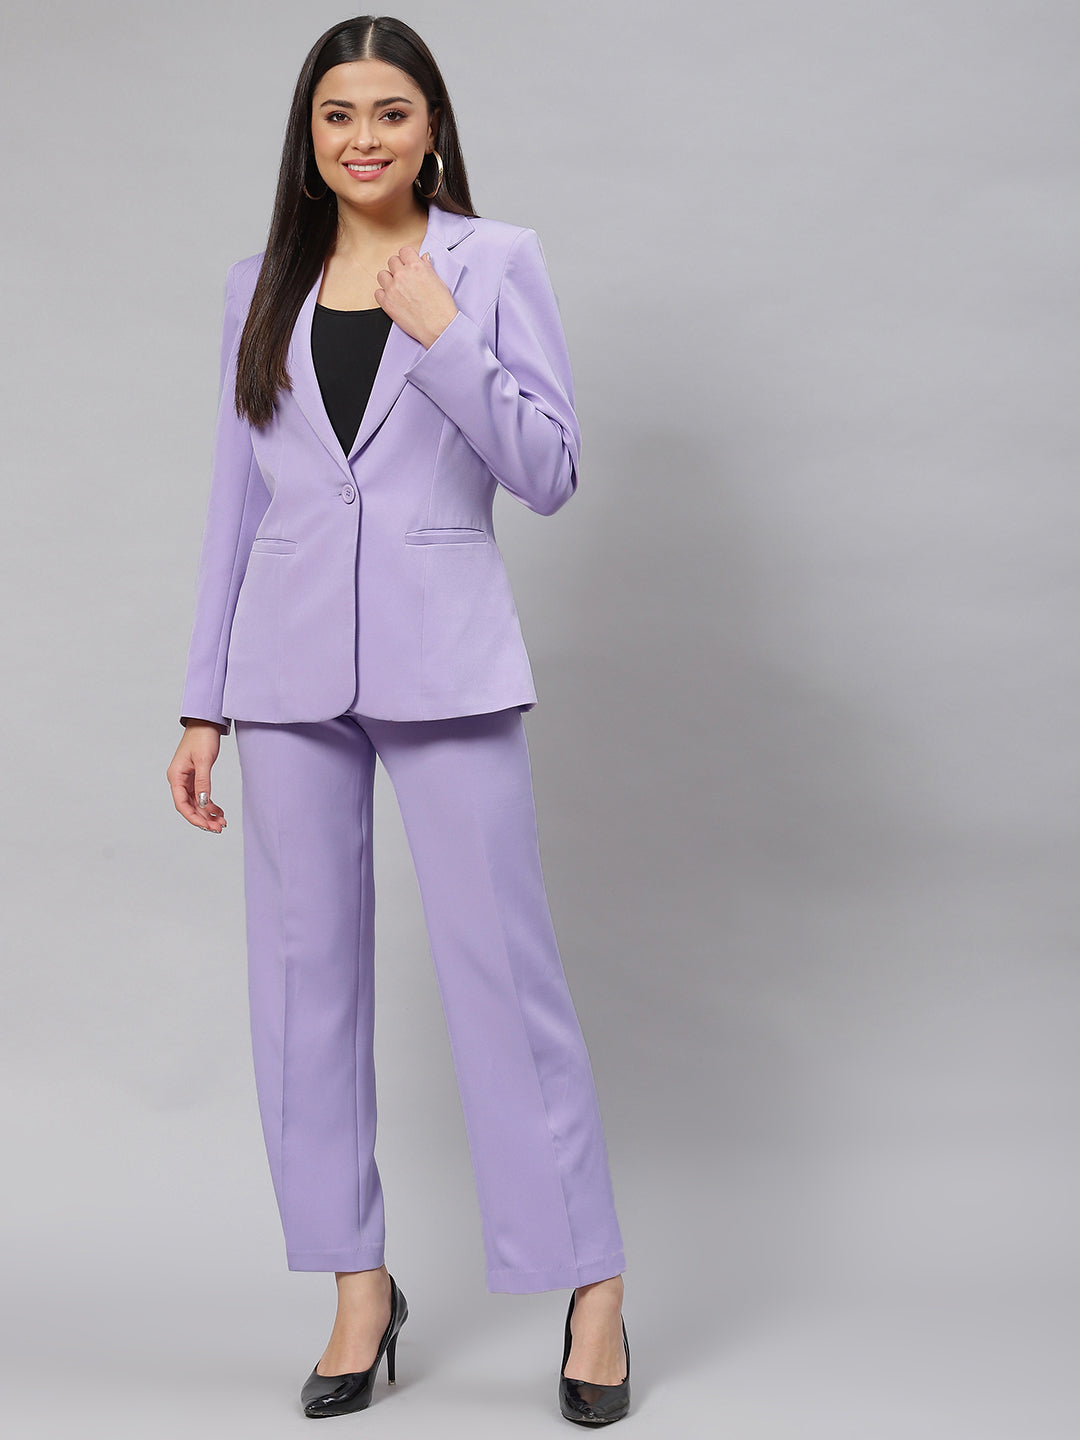 Lavender Poly Cotton Notched Lapel Pant Suit